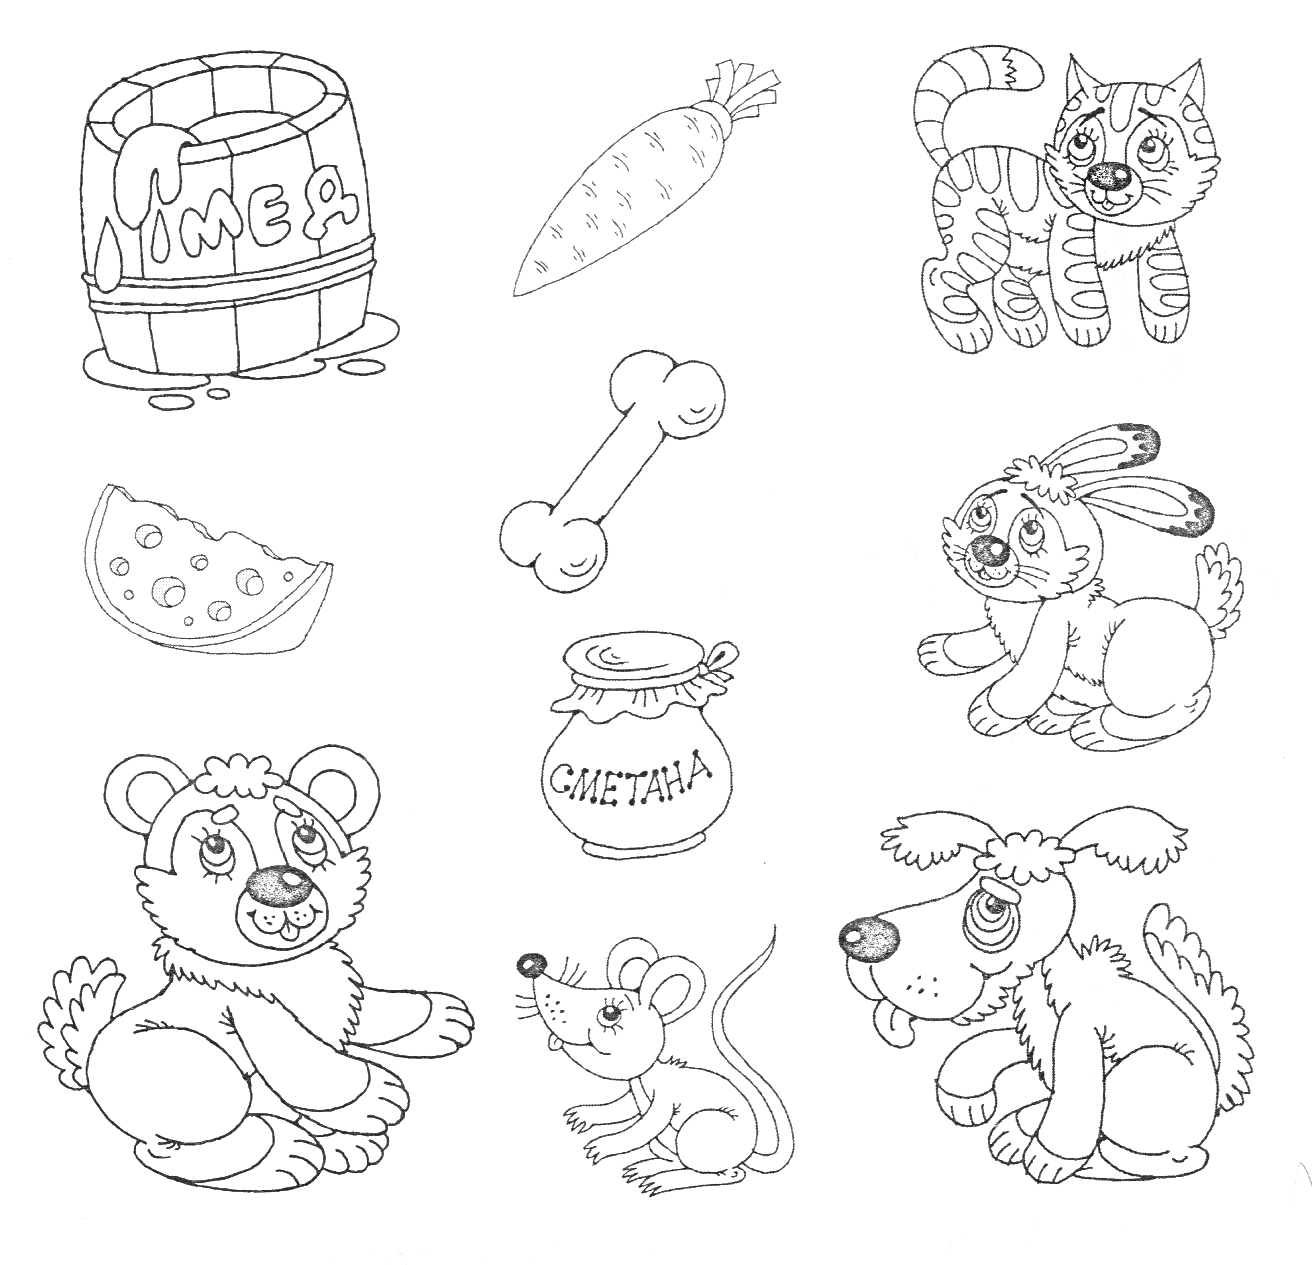 Раскраска Бочка с медом, морковь, тигр, арбуз, кость, банка со сметаной, мишка, мышь, заяц, щенок